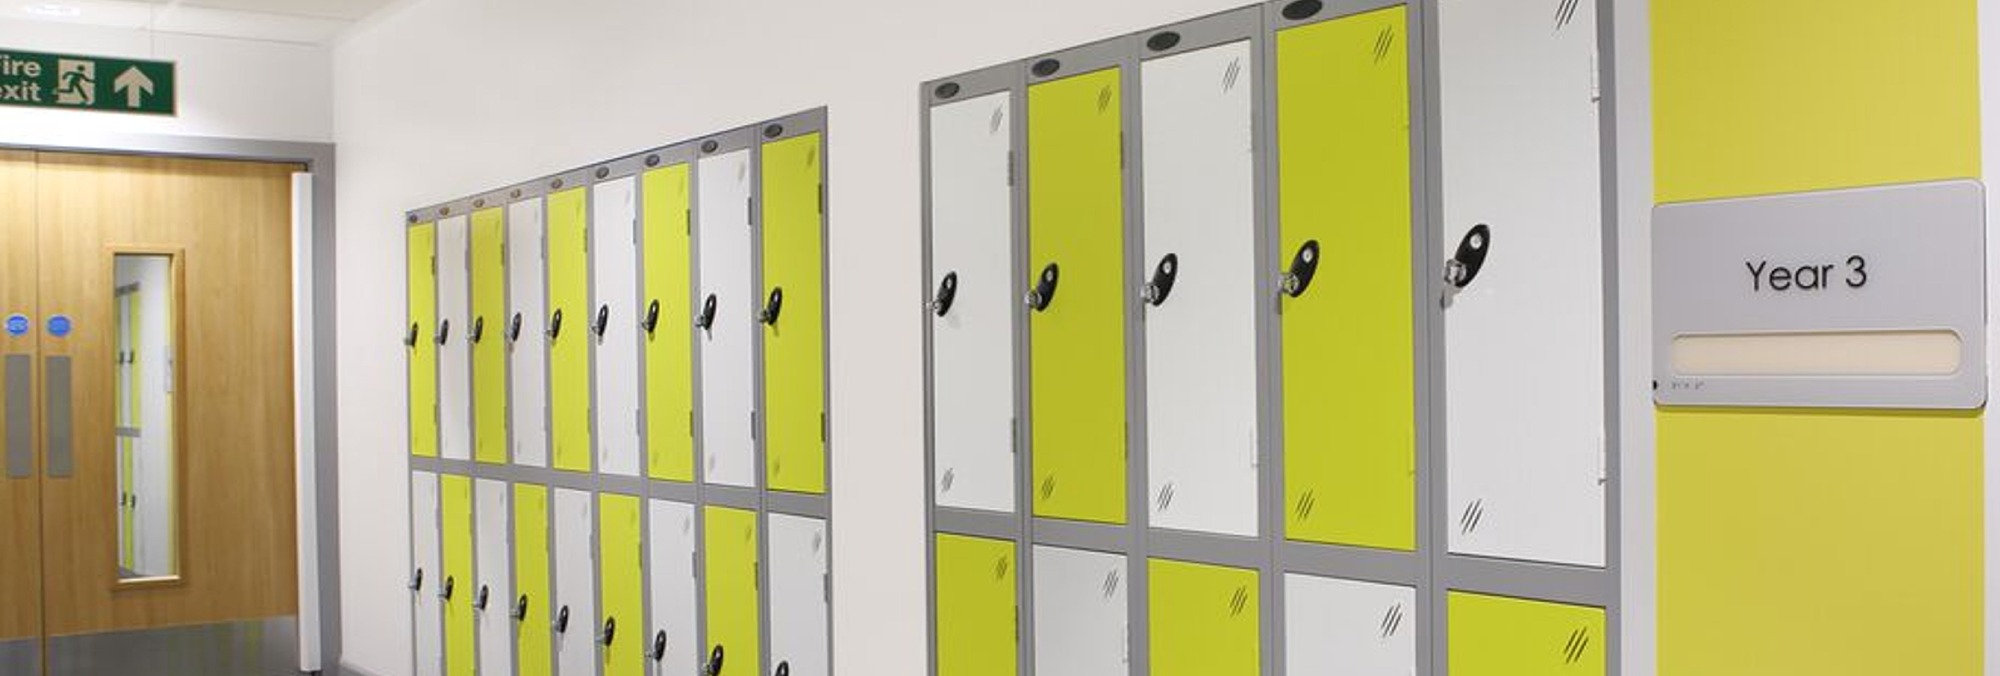 steel lockers, metal lockers, compartment lockers